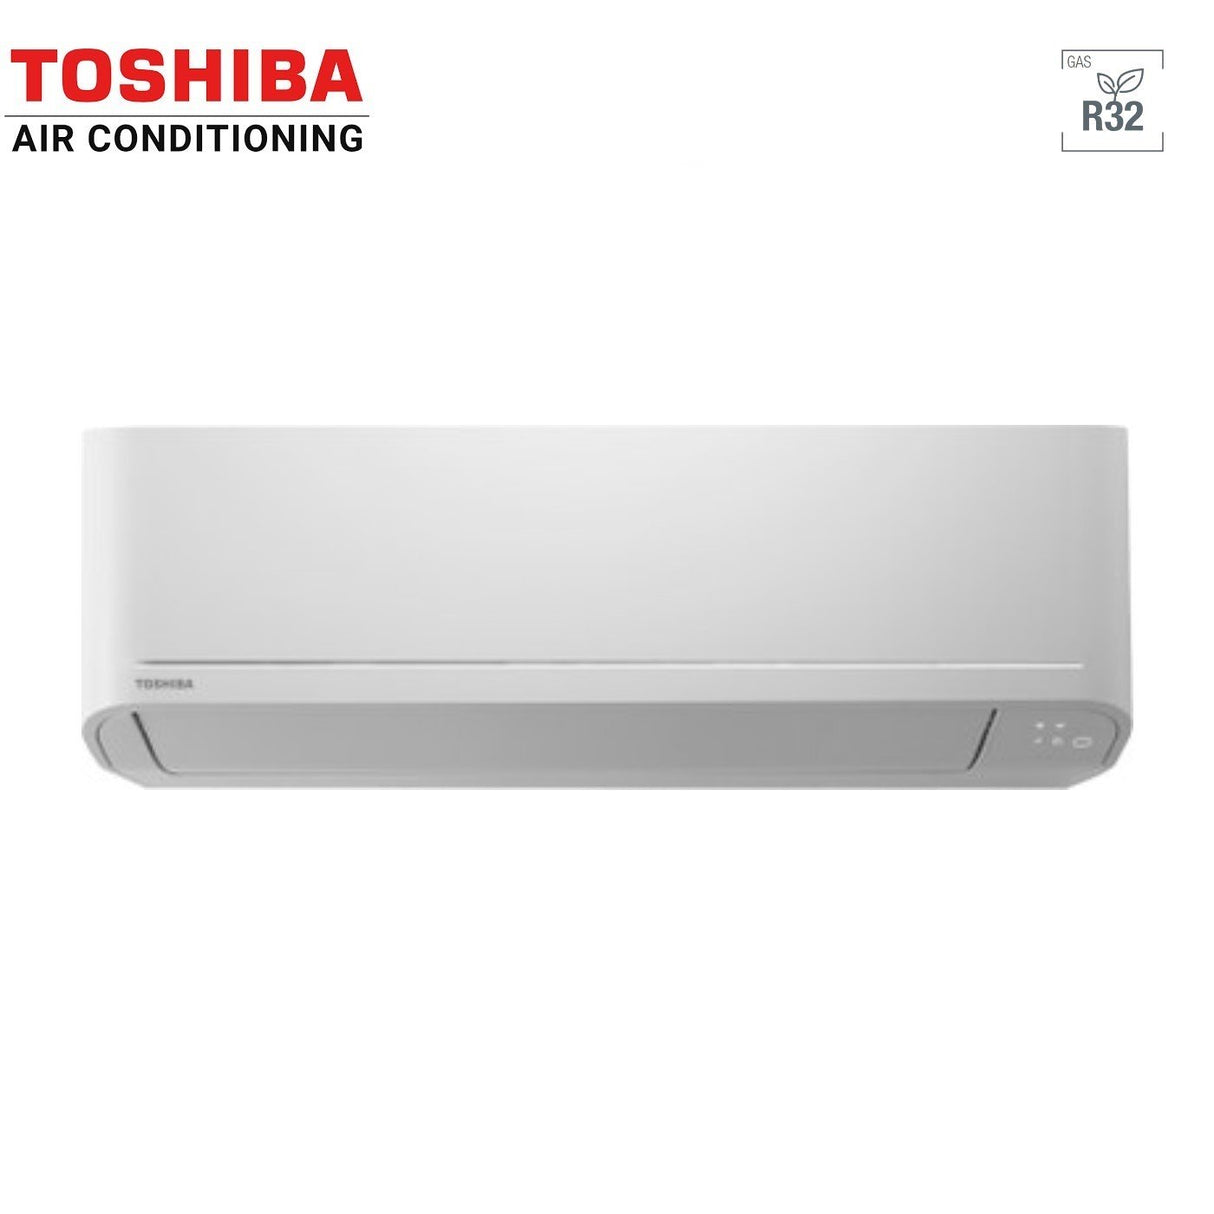 immagine-3-toshiba-climatizzatore-condizionatore-toshiba-trial-split-inverter-serie-seiya-161616-151515-ras-3m26u2avg-e-r-32-wi-fi-optional-160001600016000-150001500015000